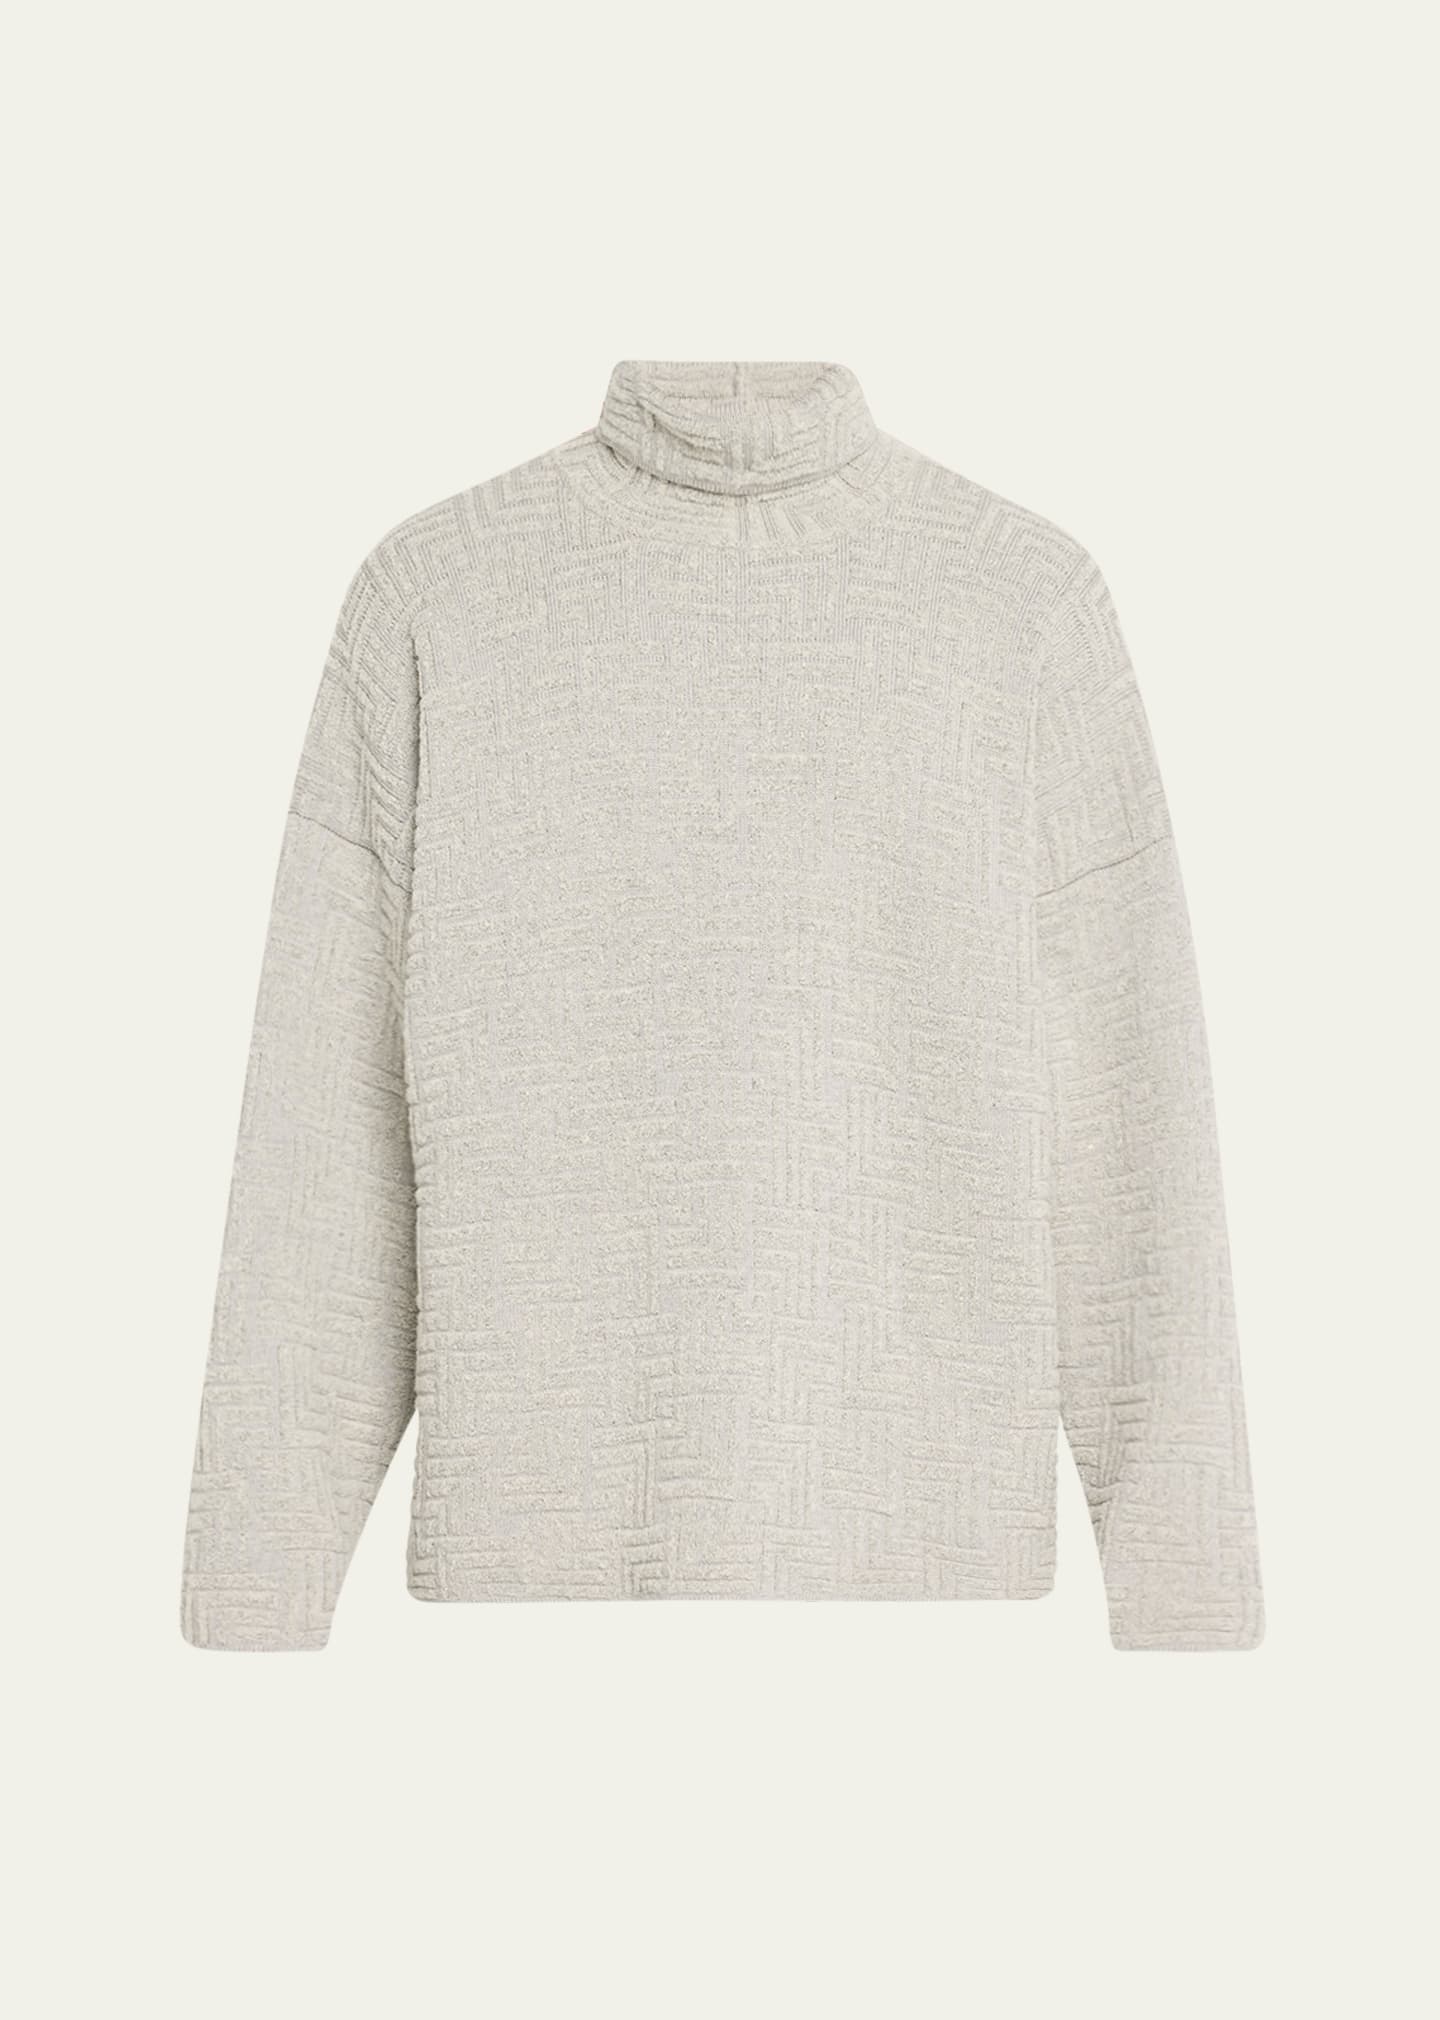 Fear Of God Men's Oversized Geometric Turtleneck Sweater In 085 - Dove Grey